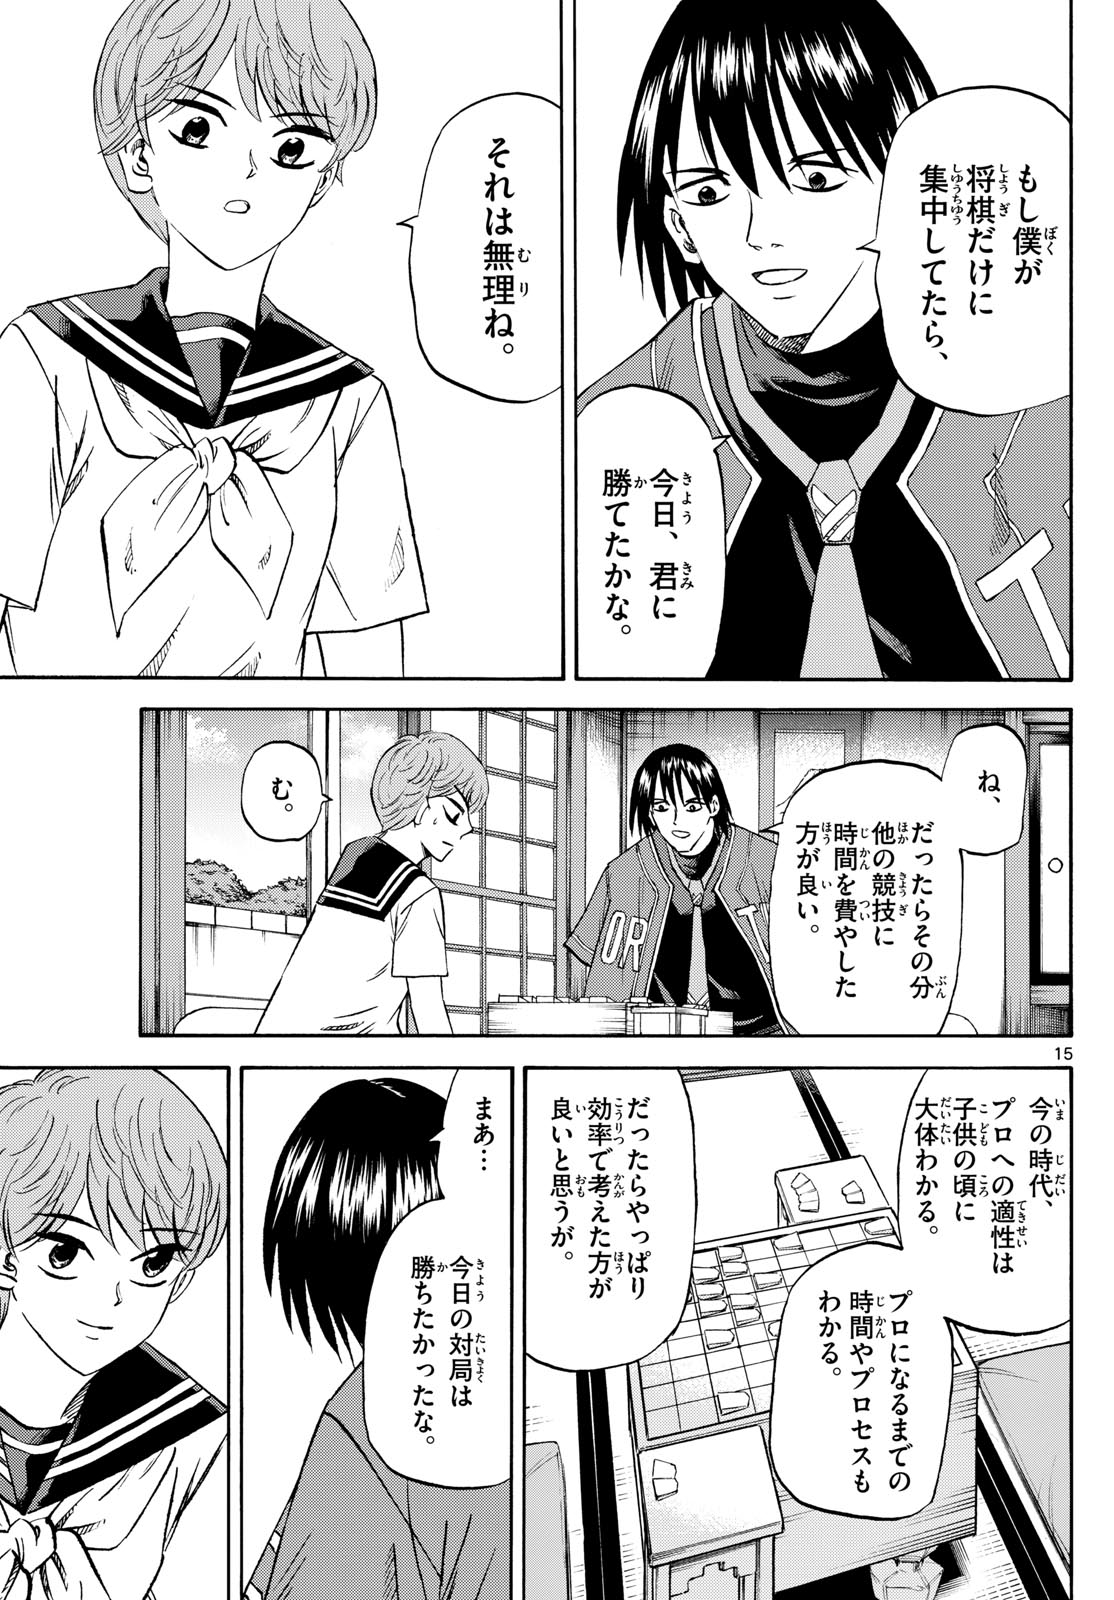 Tatsu to Ichigo - Chapter 198 - Page 15